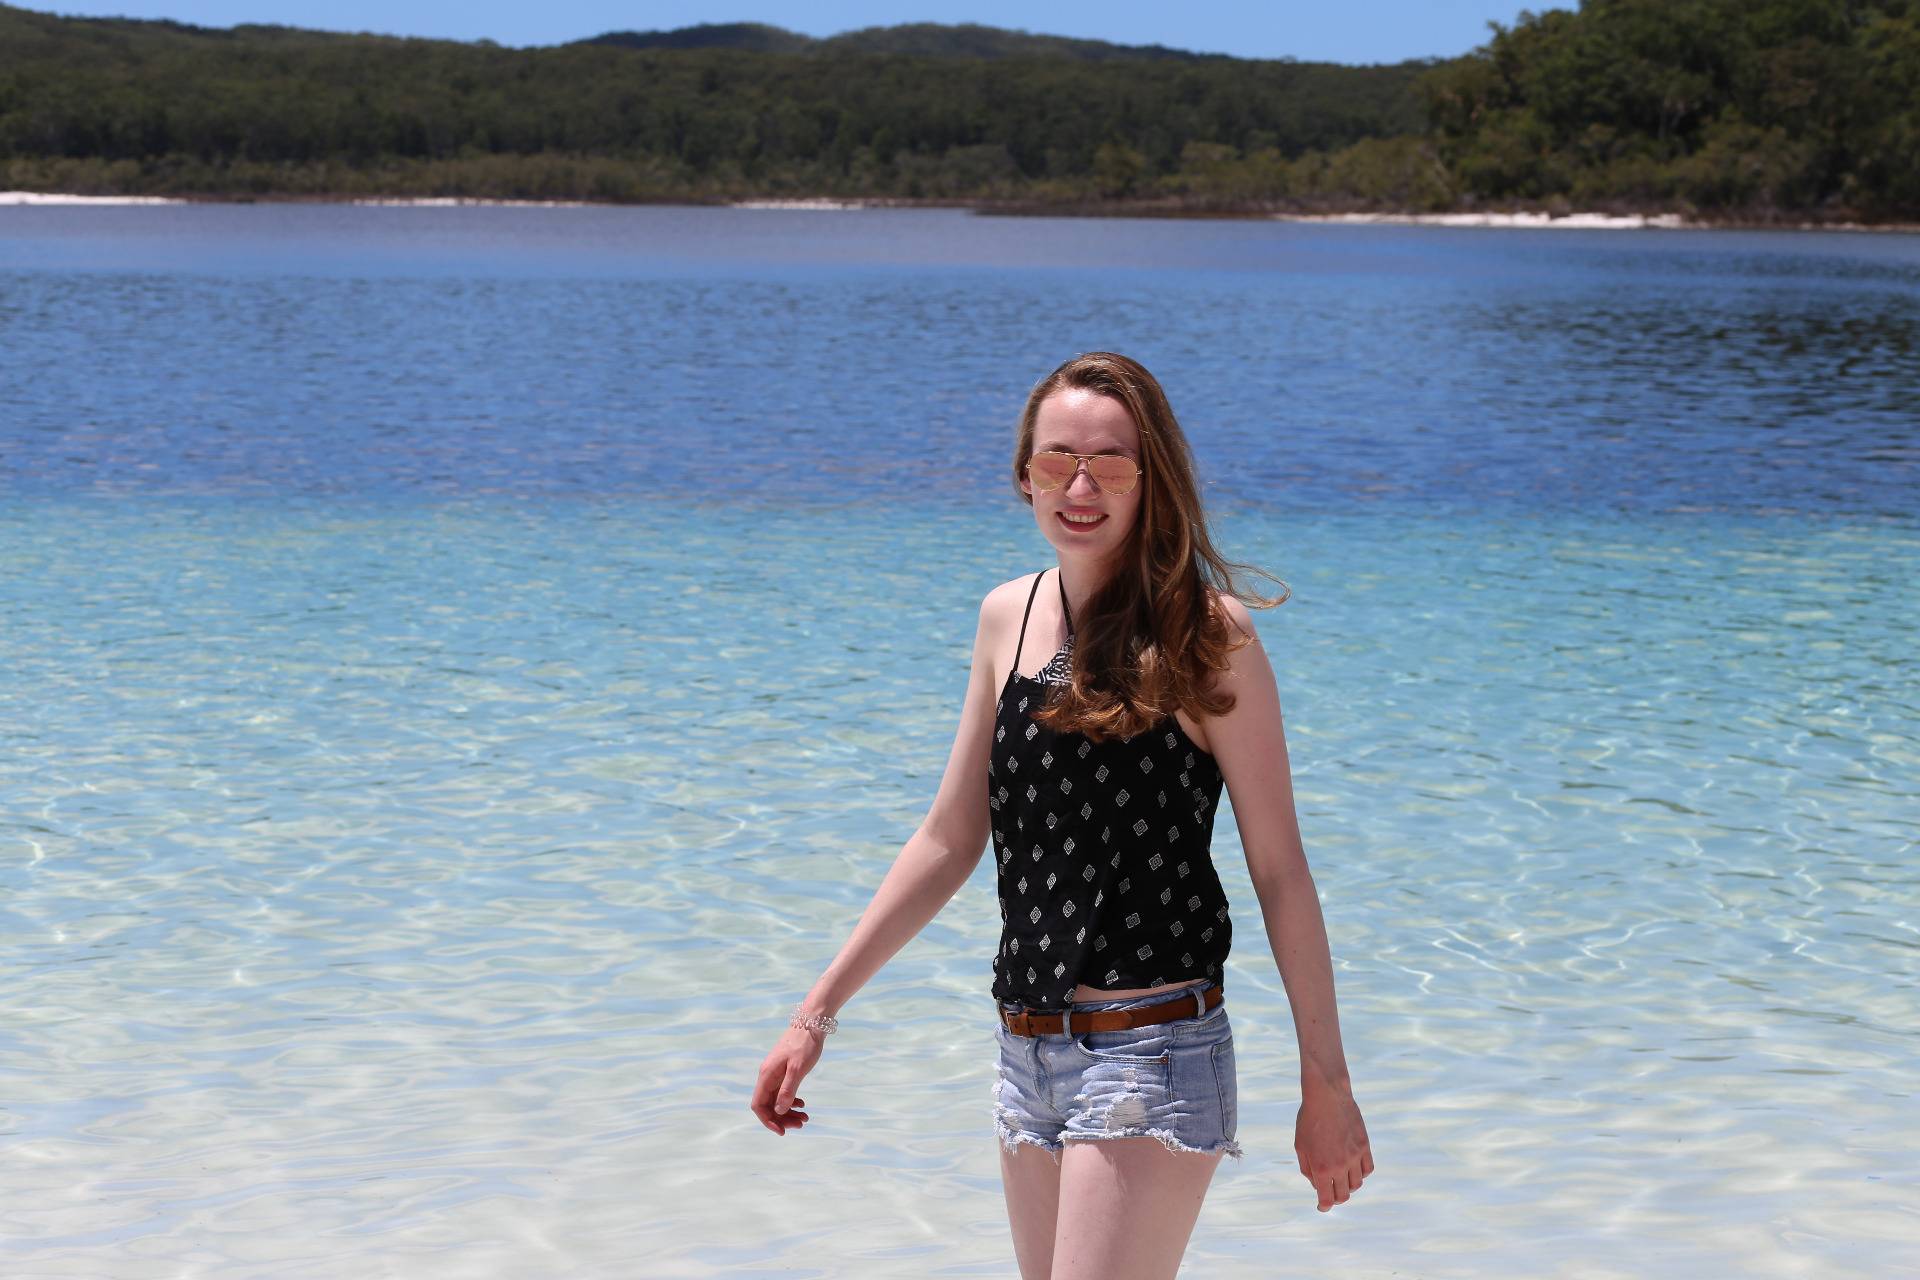 We visited Fraser Island!